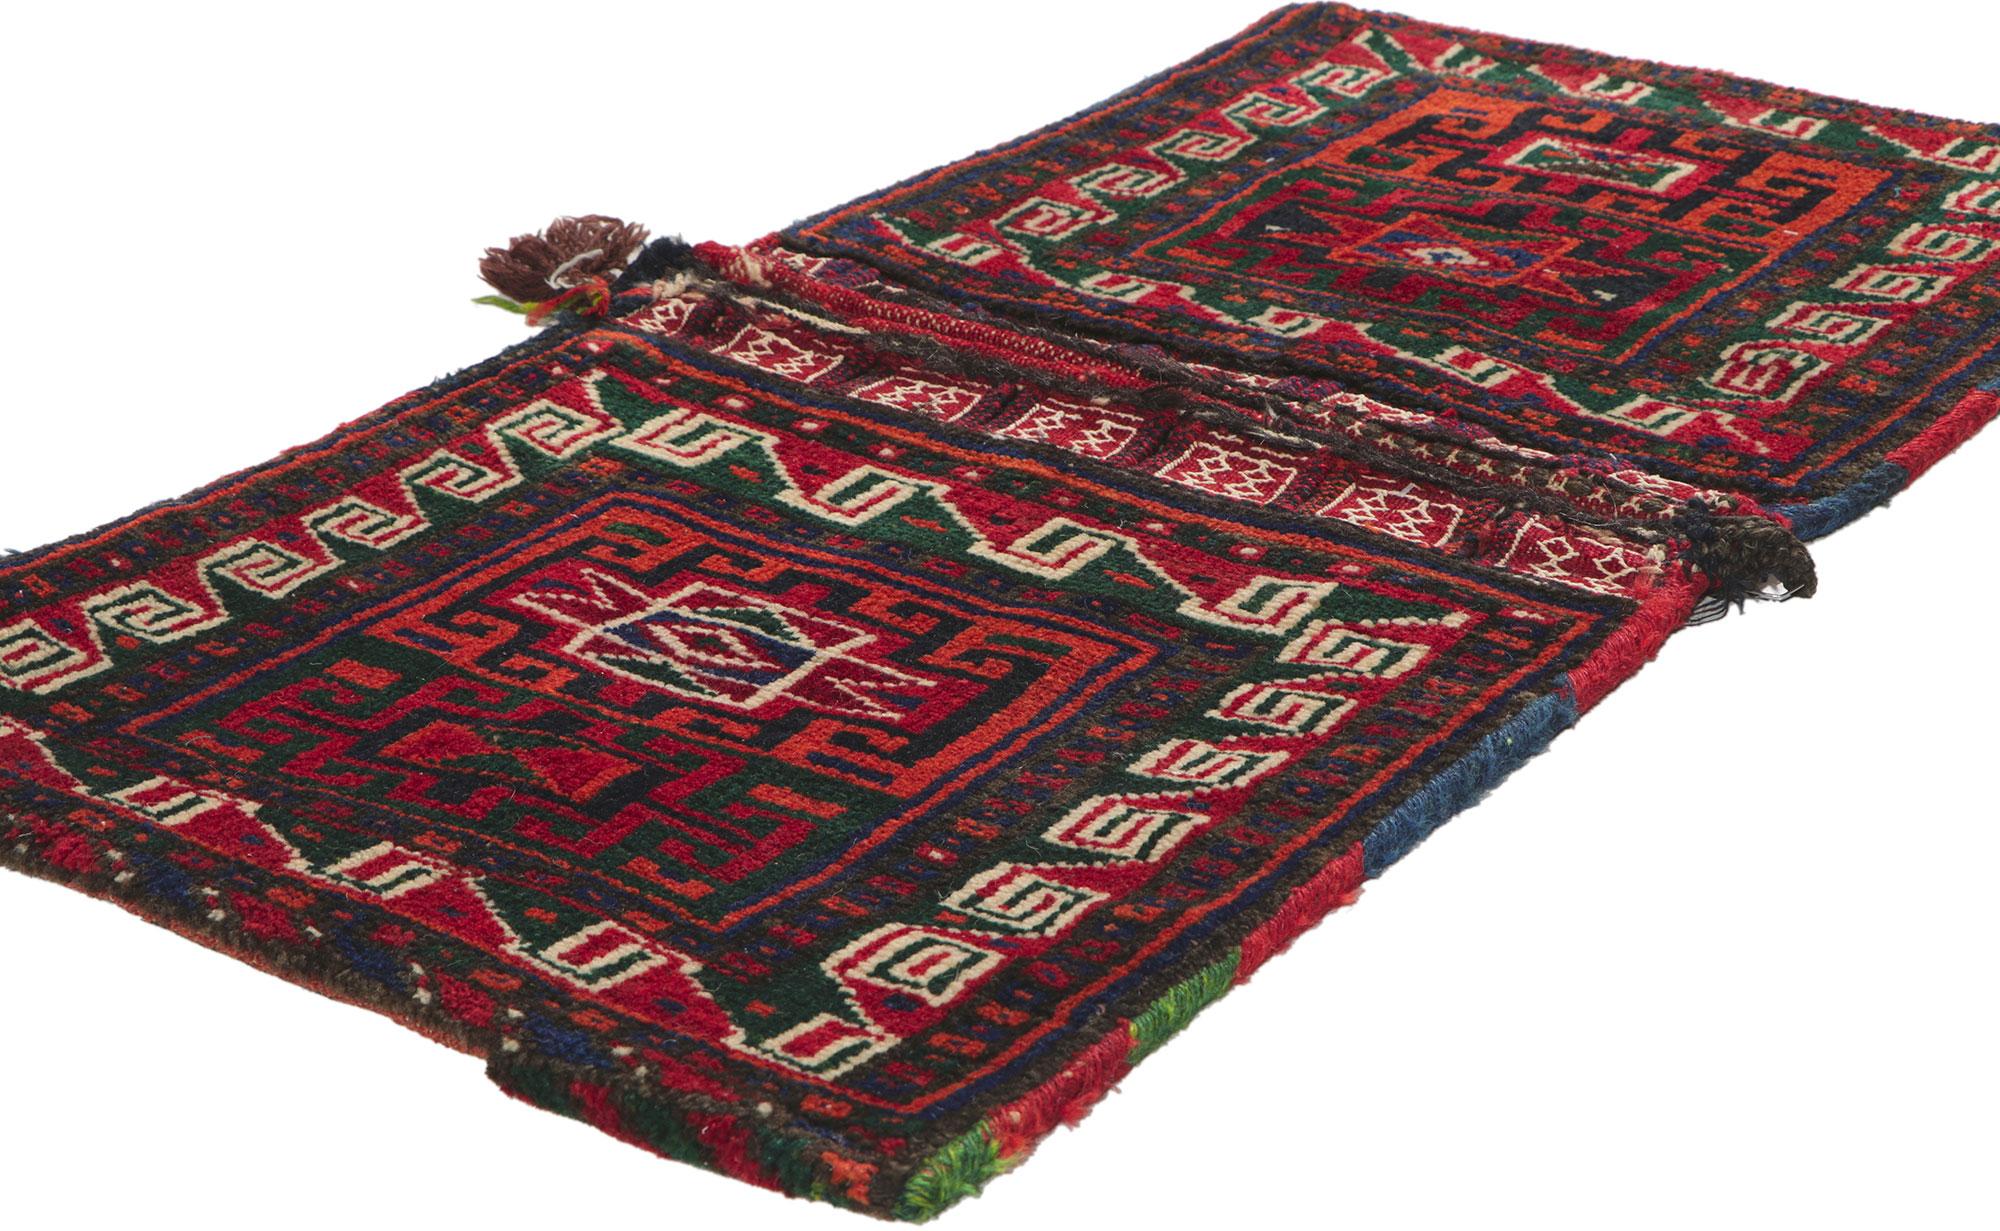 78479 Ancienne sacoche persane Turkmen, 01'09 x 03'04. Emanant du charme nomade avec des détails et une texture incroyables, cette sacoche en laine nouée à la main est une vision captivante de la beauté du tissage. Il est orné d'un motif géométrique